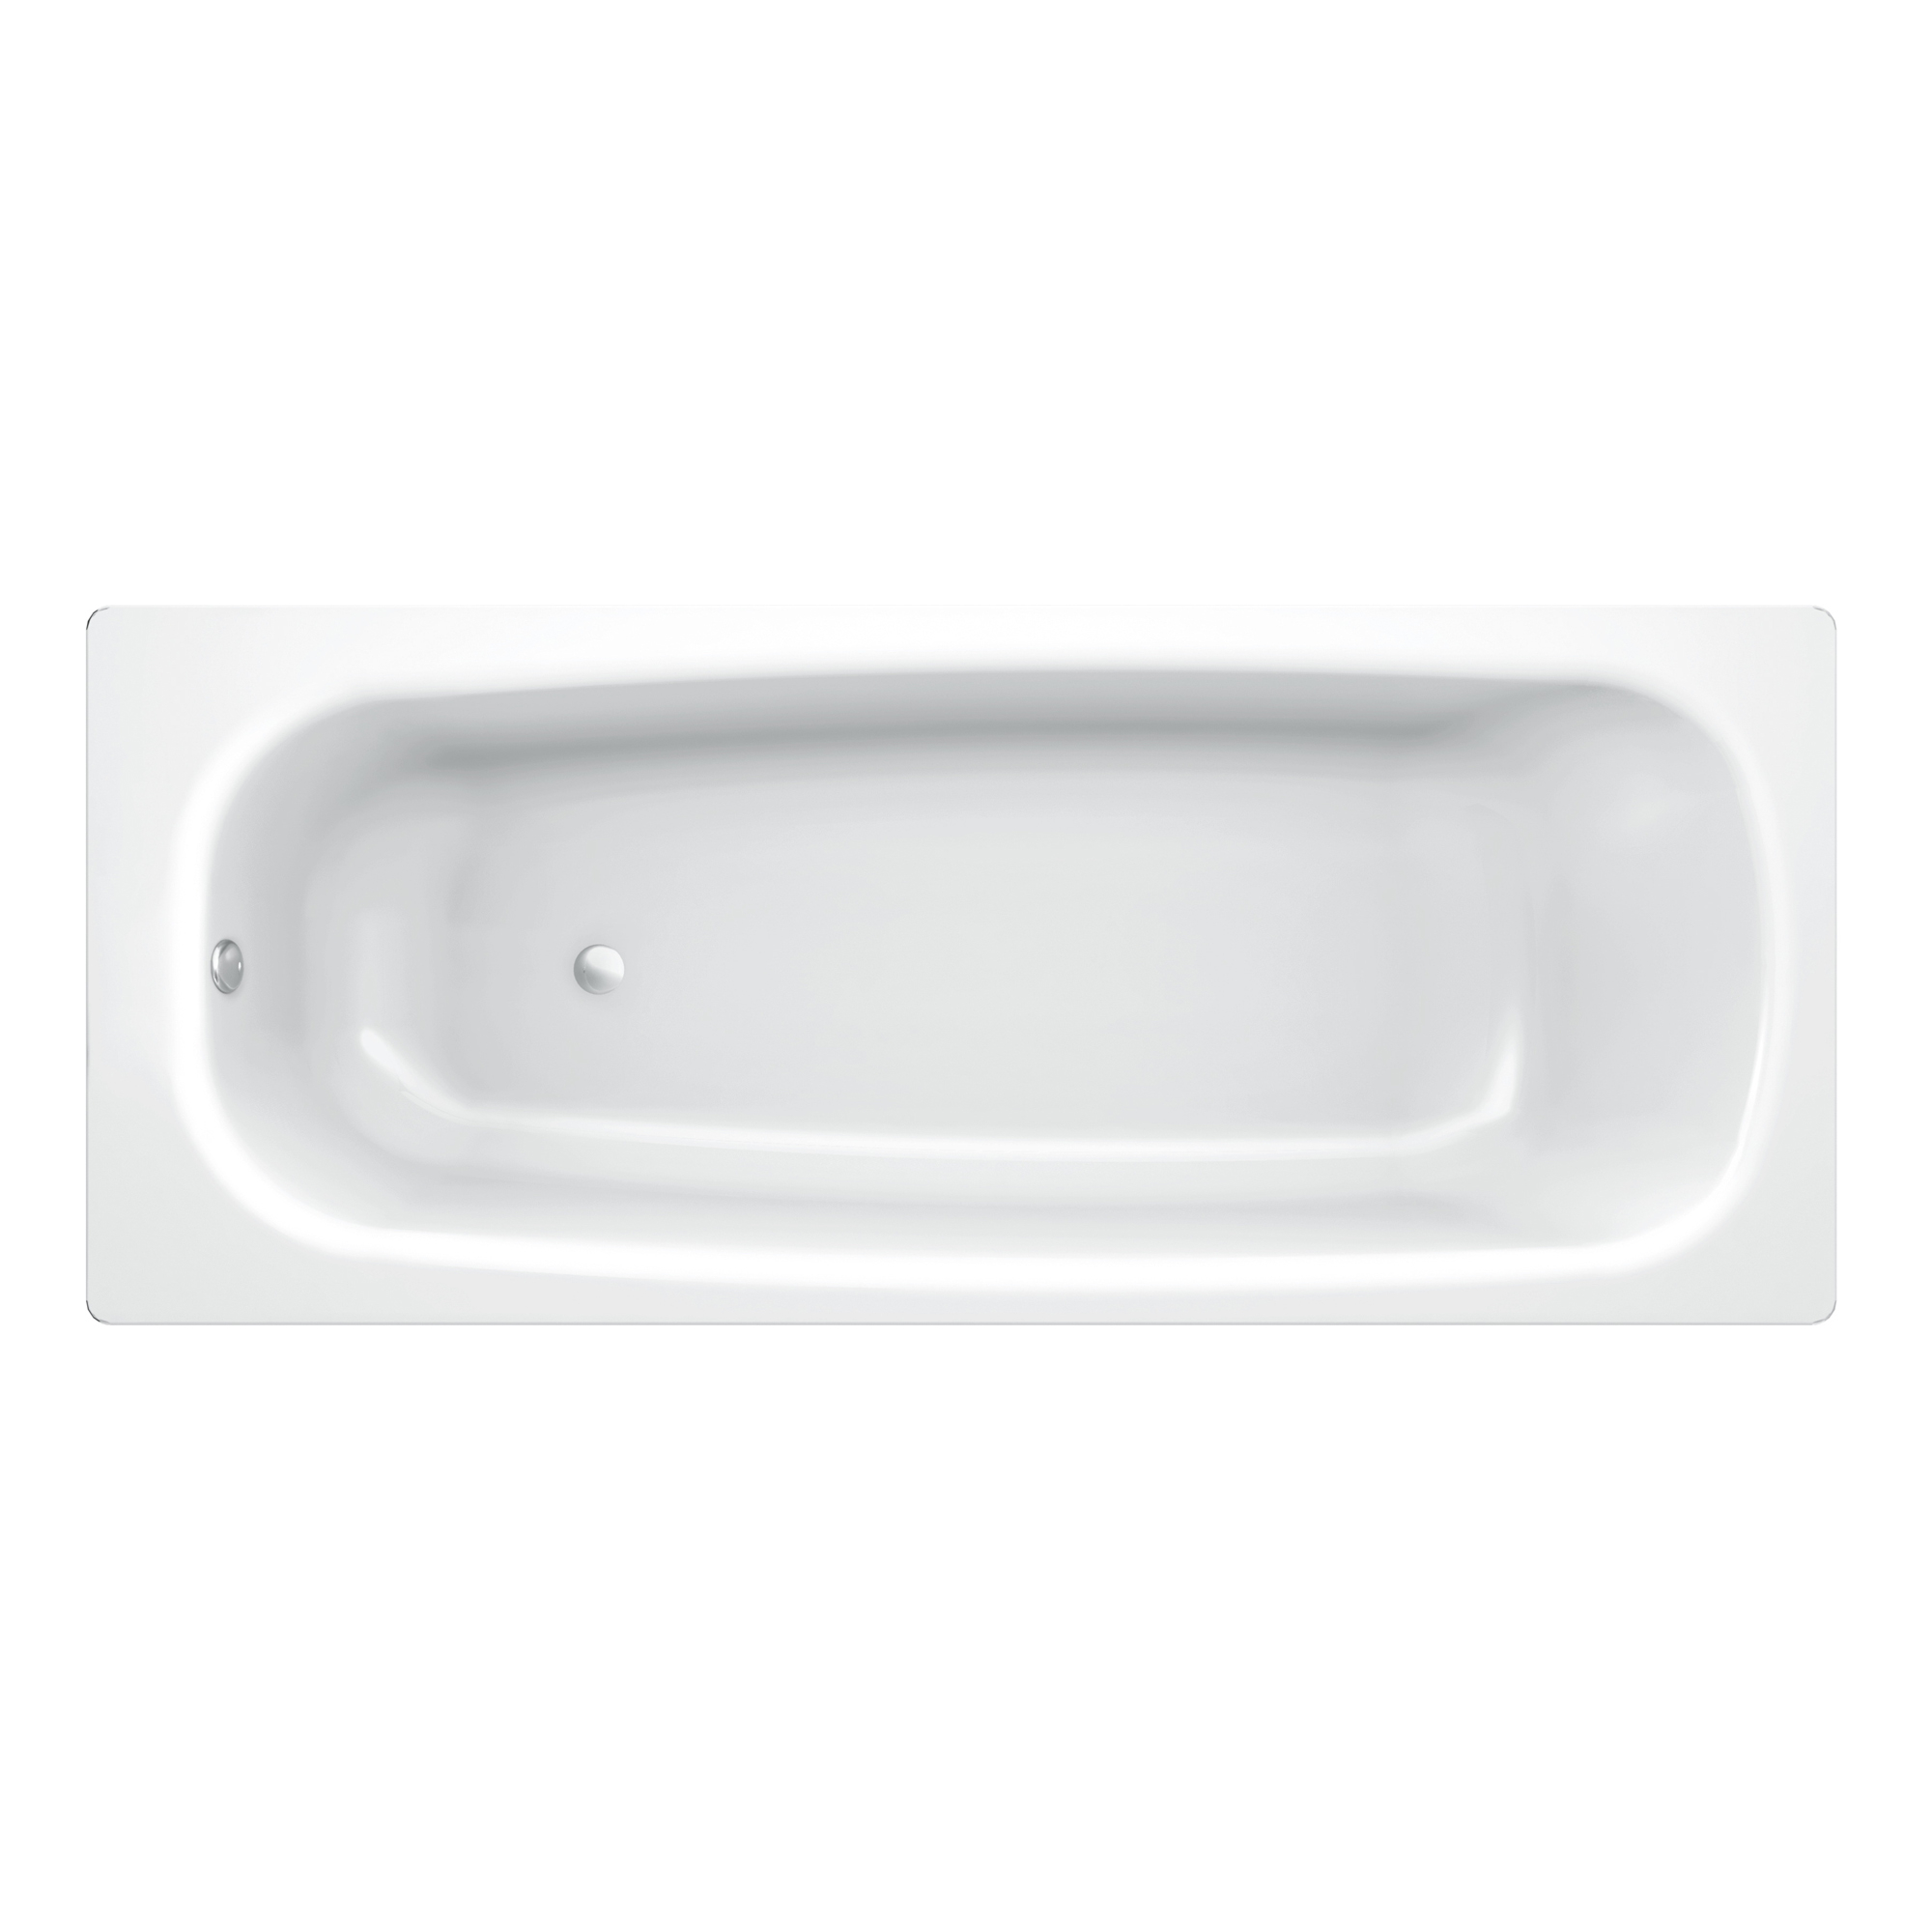 Стальная ванна Koller Pool Universal 160х70 ванна стальная blb universal hg 160х70 см 3 5 мм с шумоизоляцией b60hah001